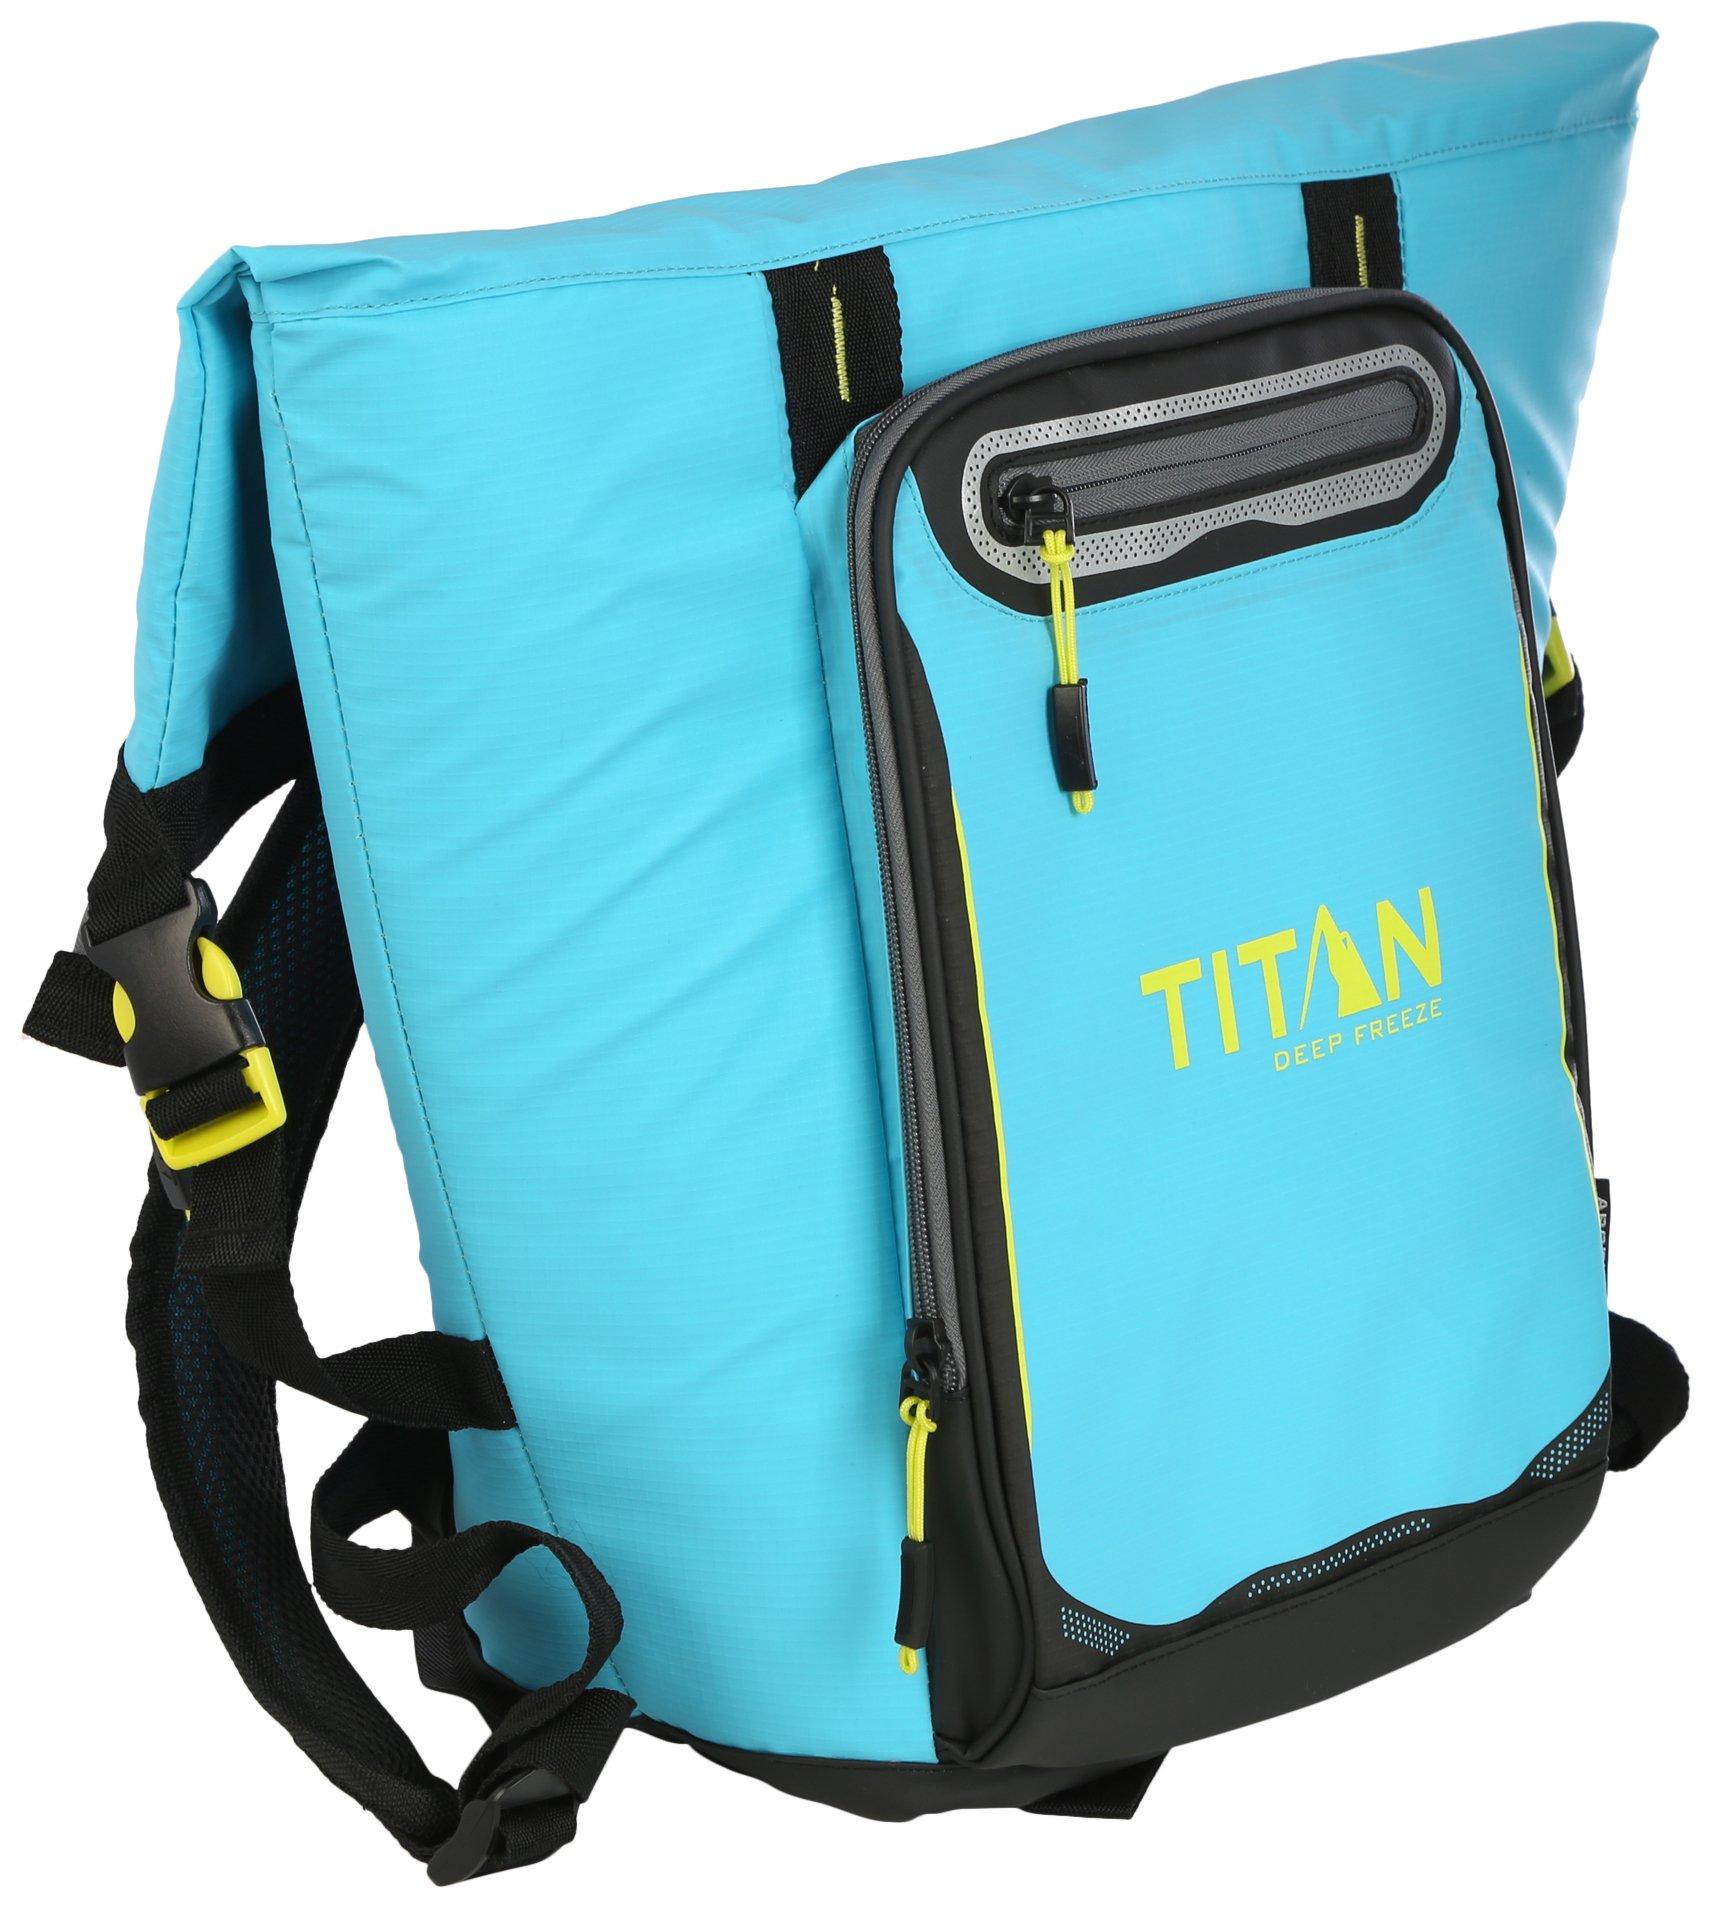 Titan Deep Freeze Rolltop Backpack Cooler